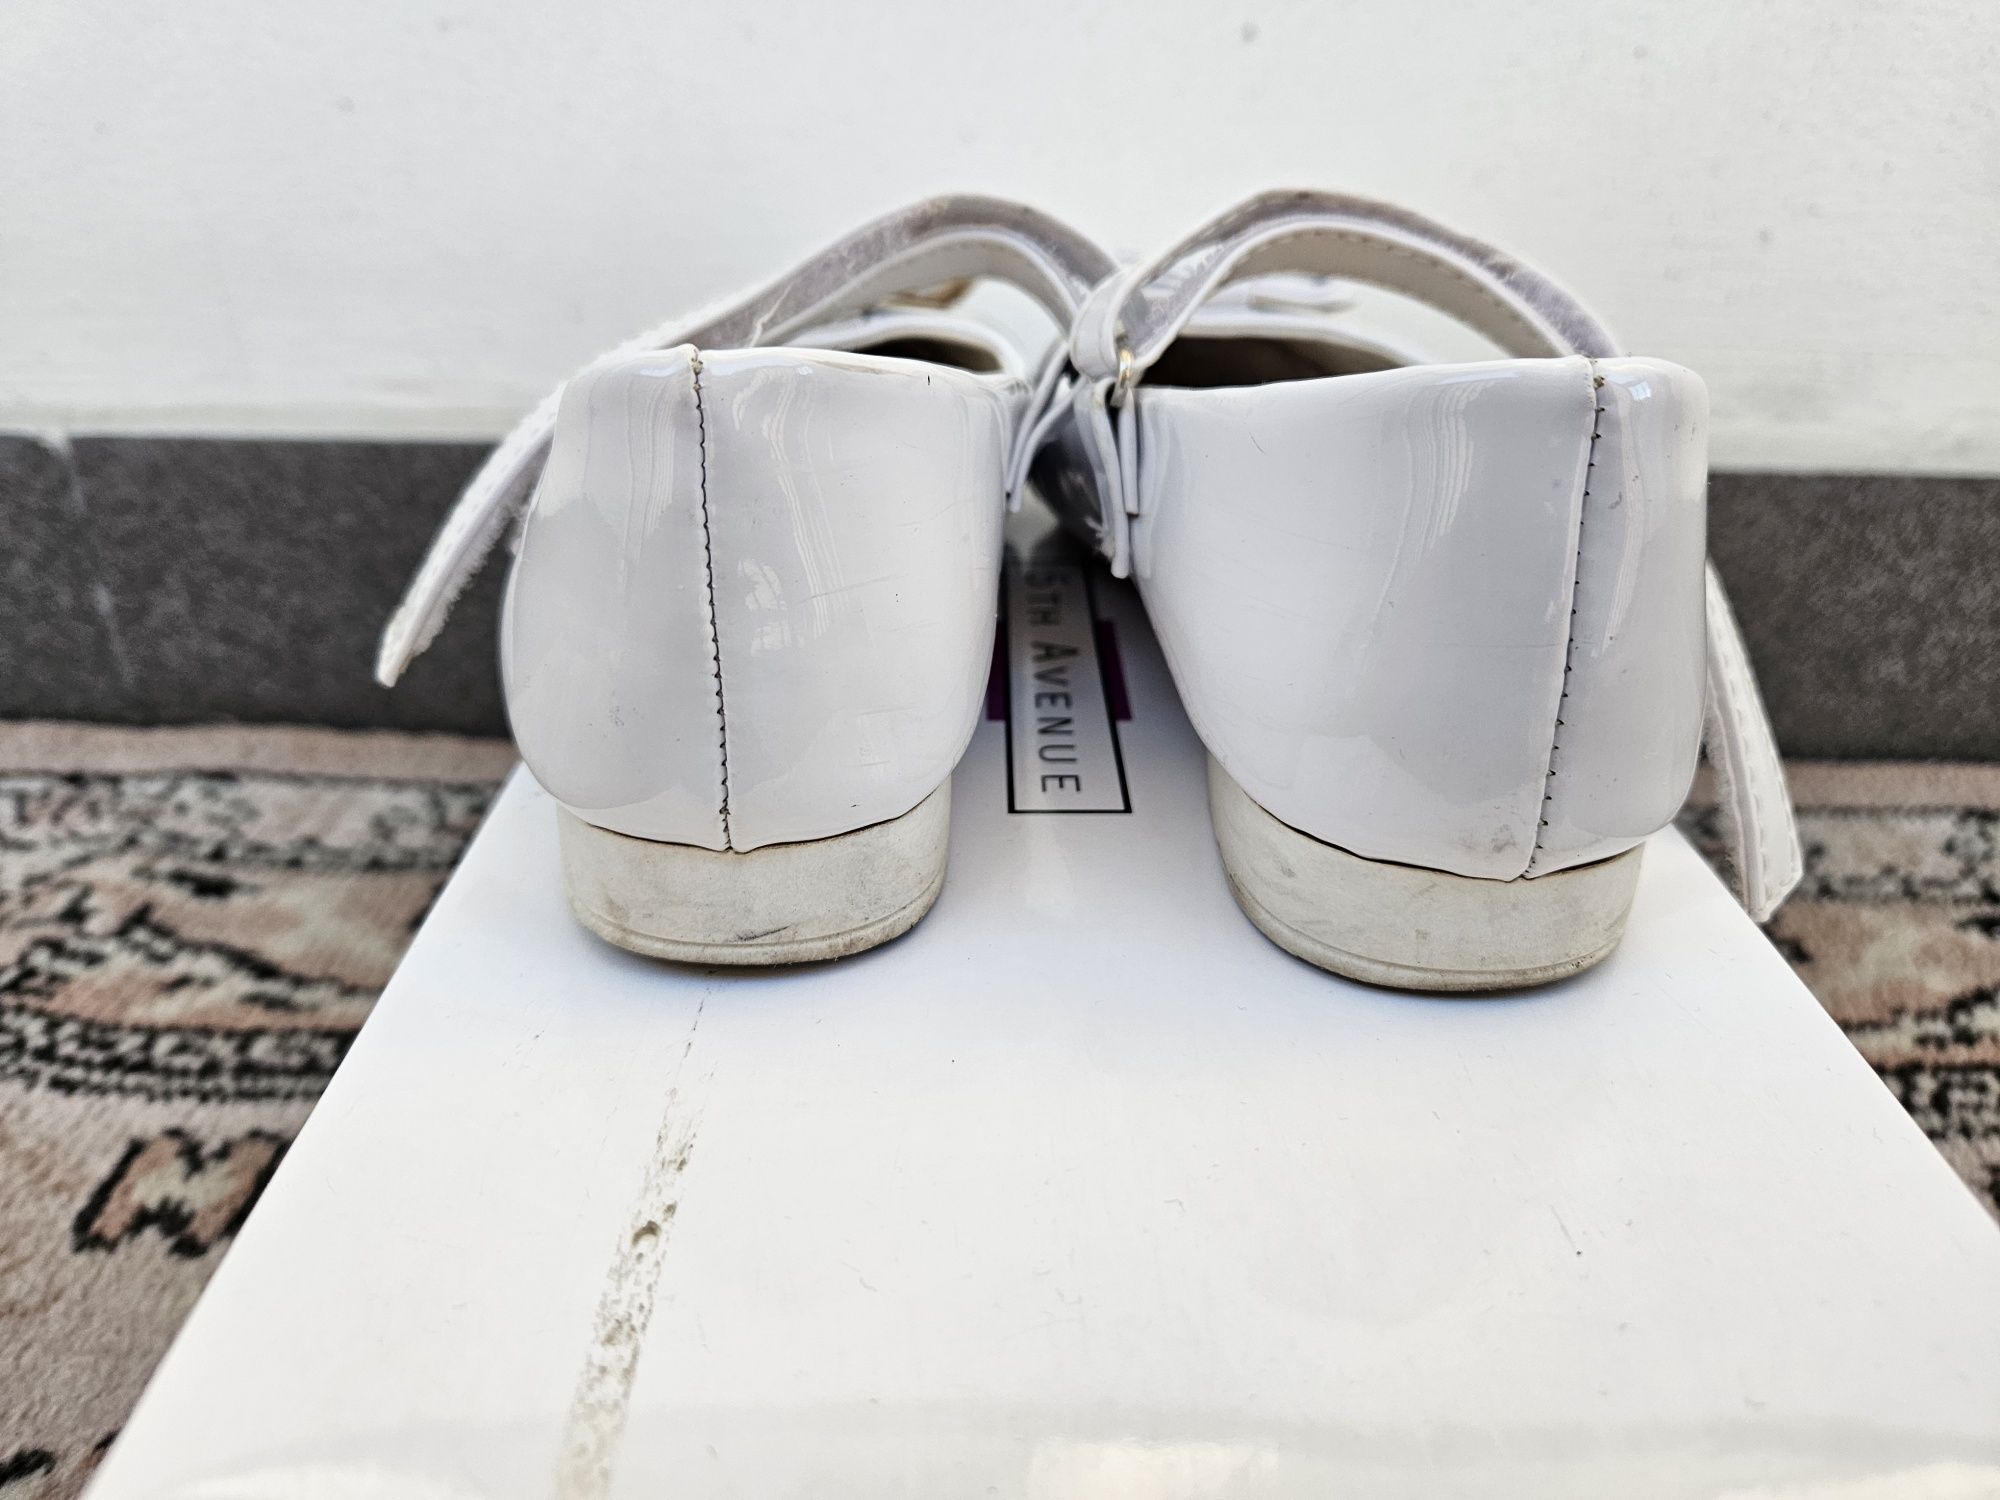 Buty, obuwie, pantofle komunijne roz. 33 firmy Sabana